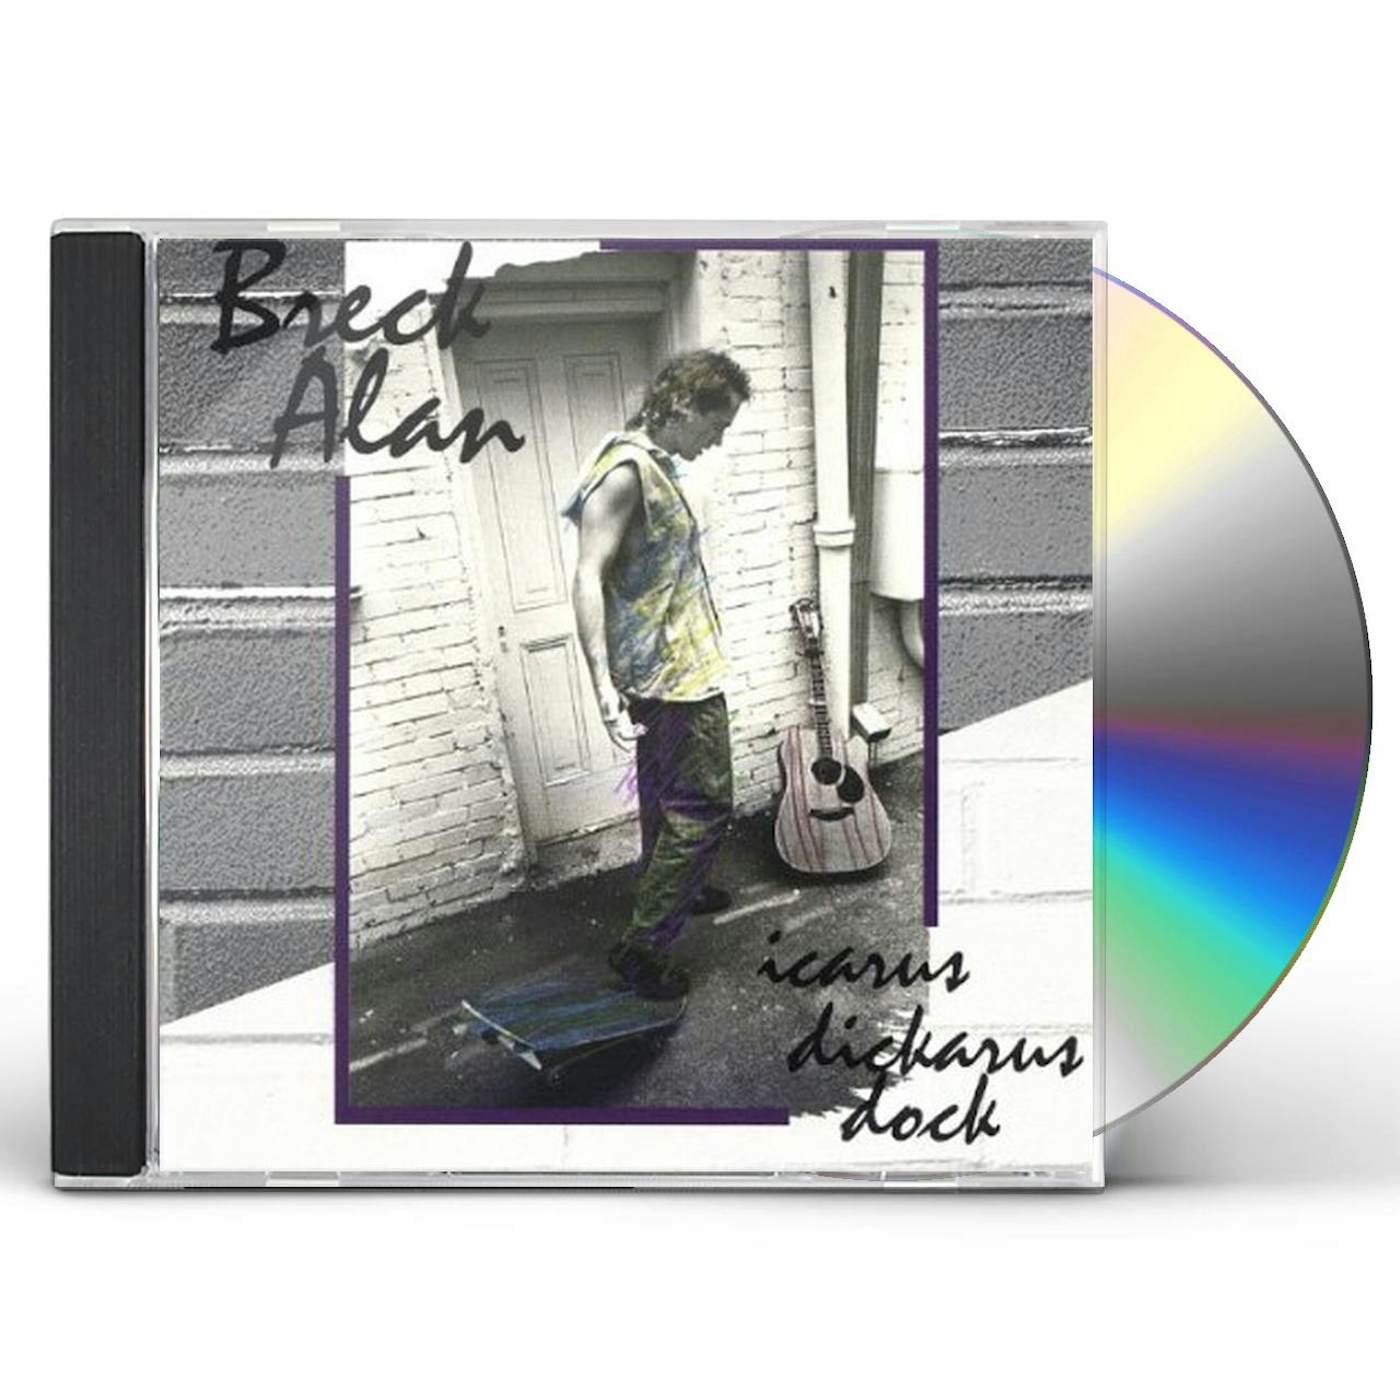 Breck Alan ICARUS DICKARUS DOCK CD